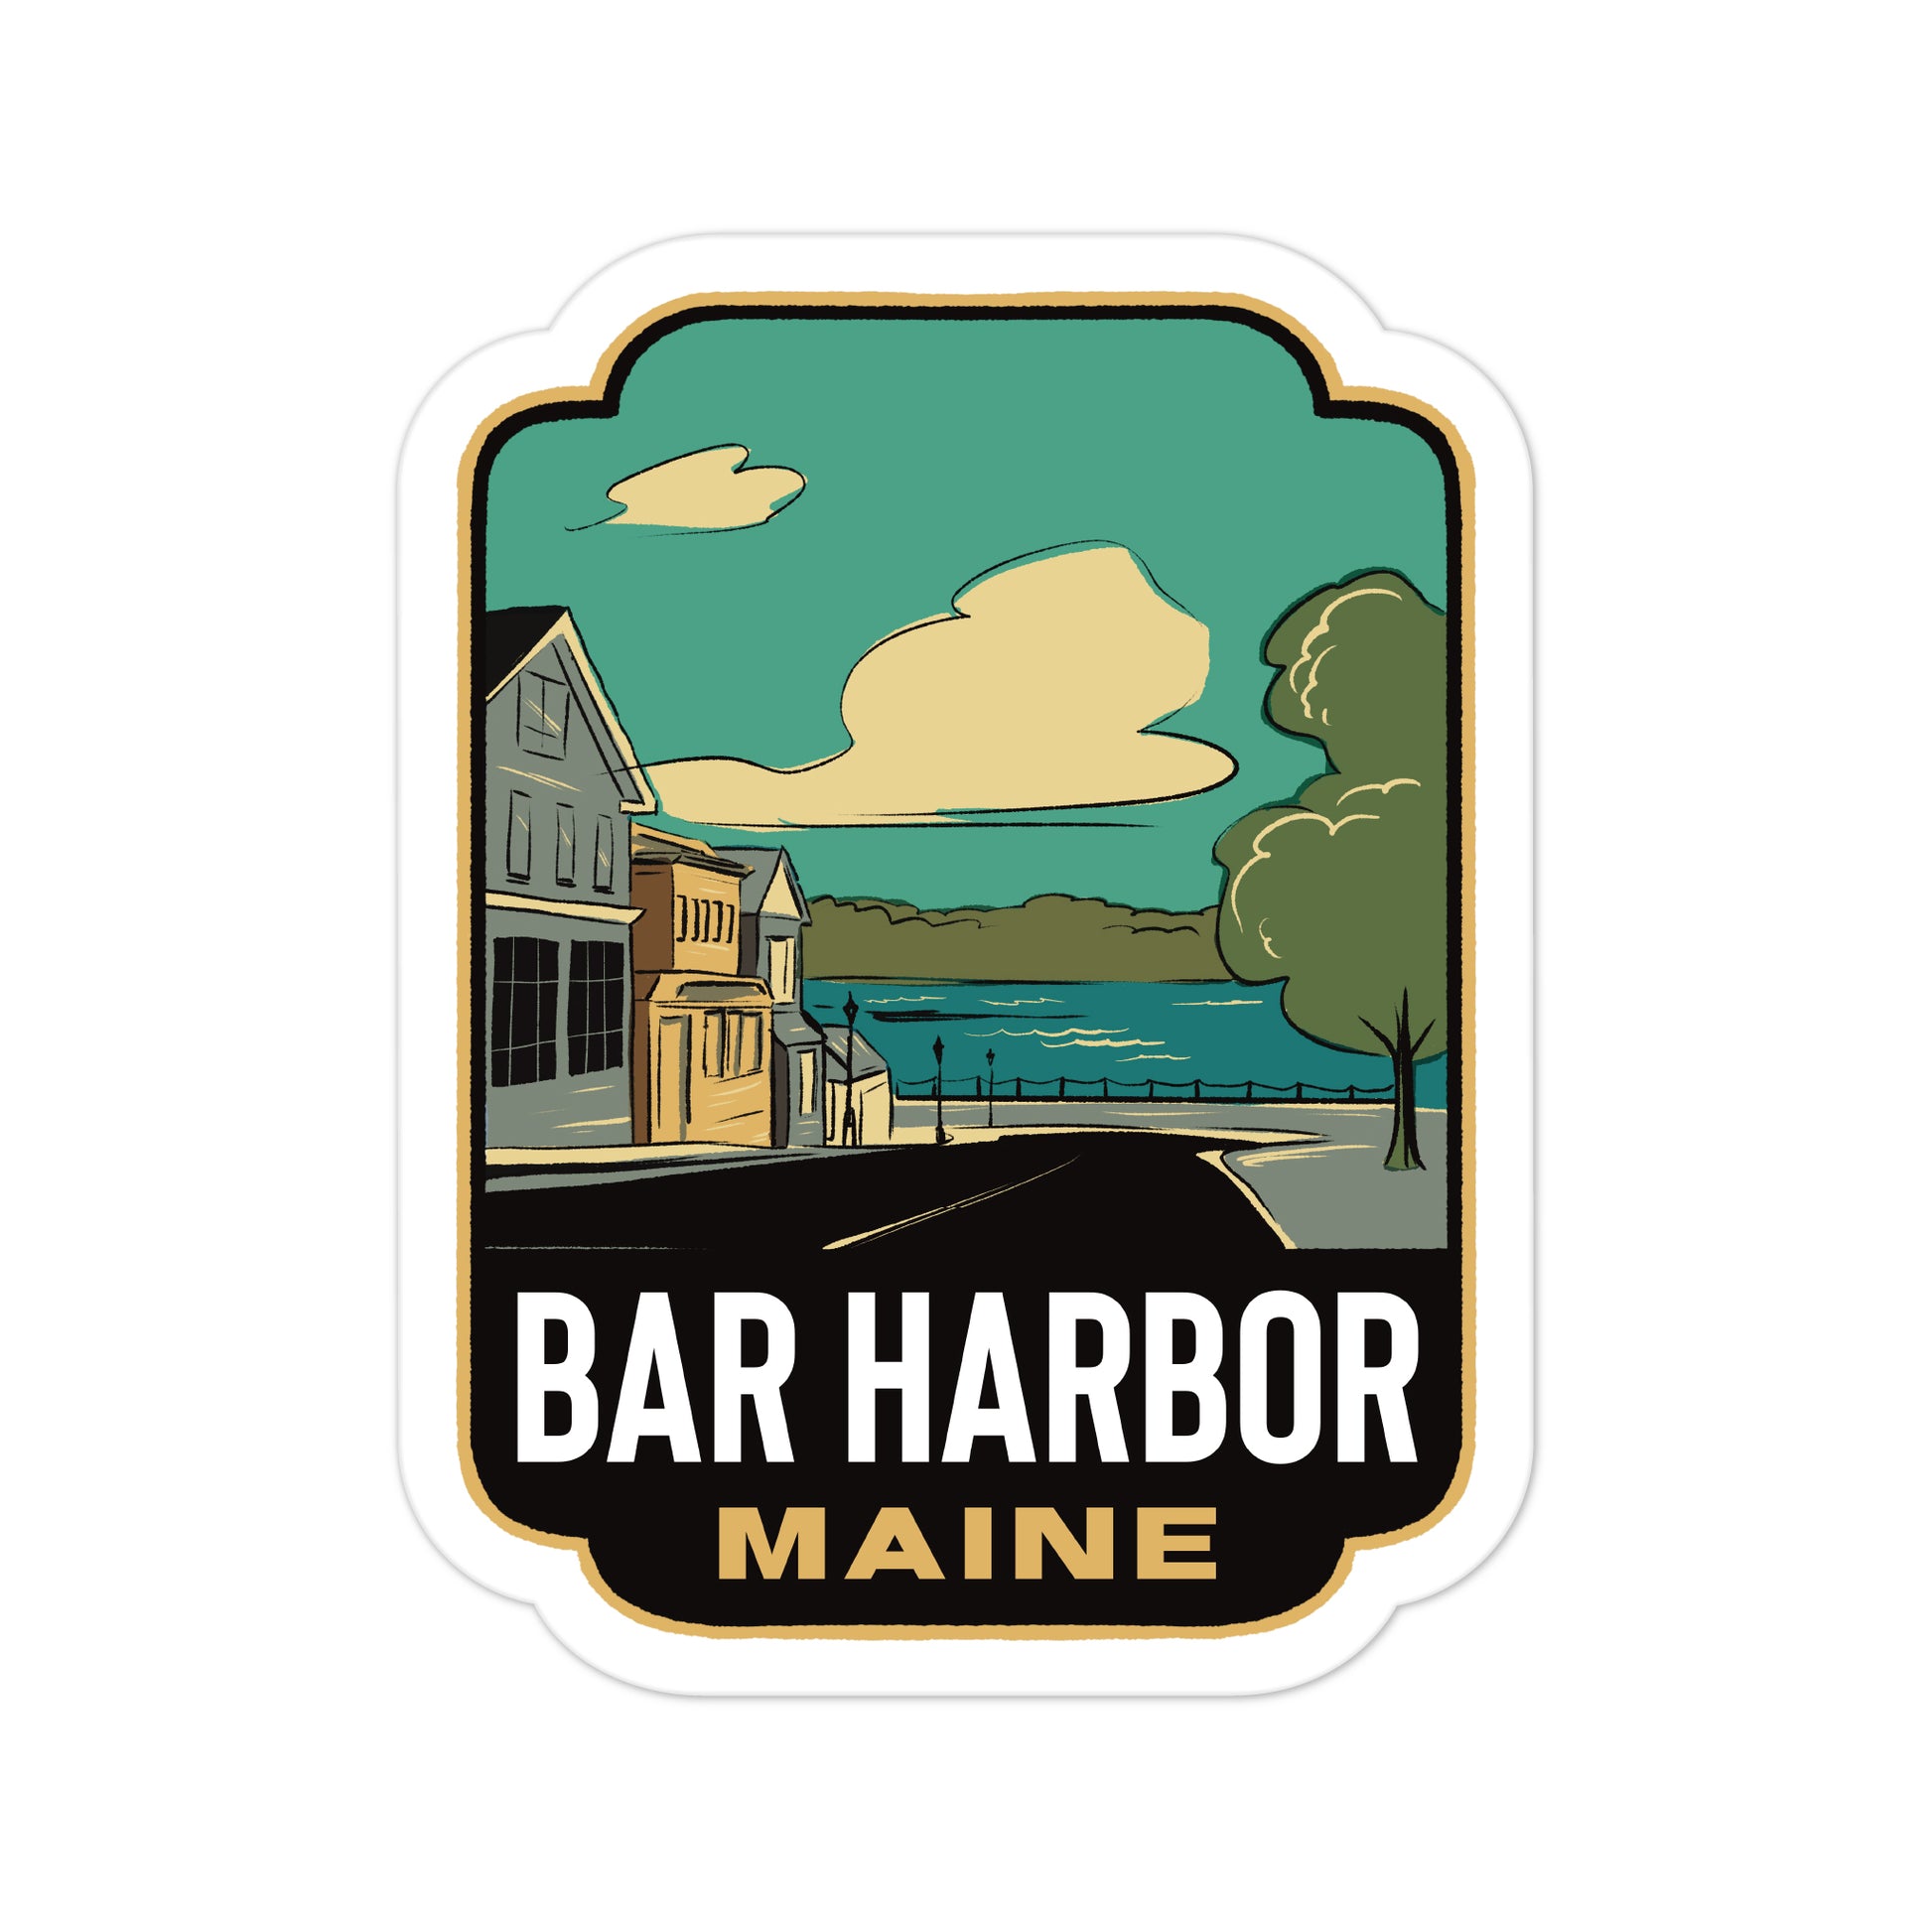 A sticker of Bar Harbor Maine